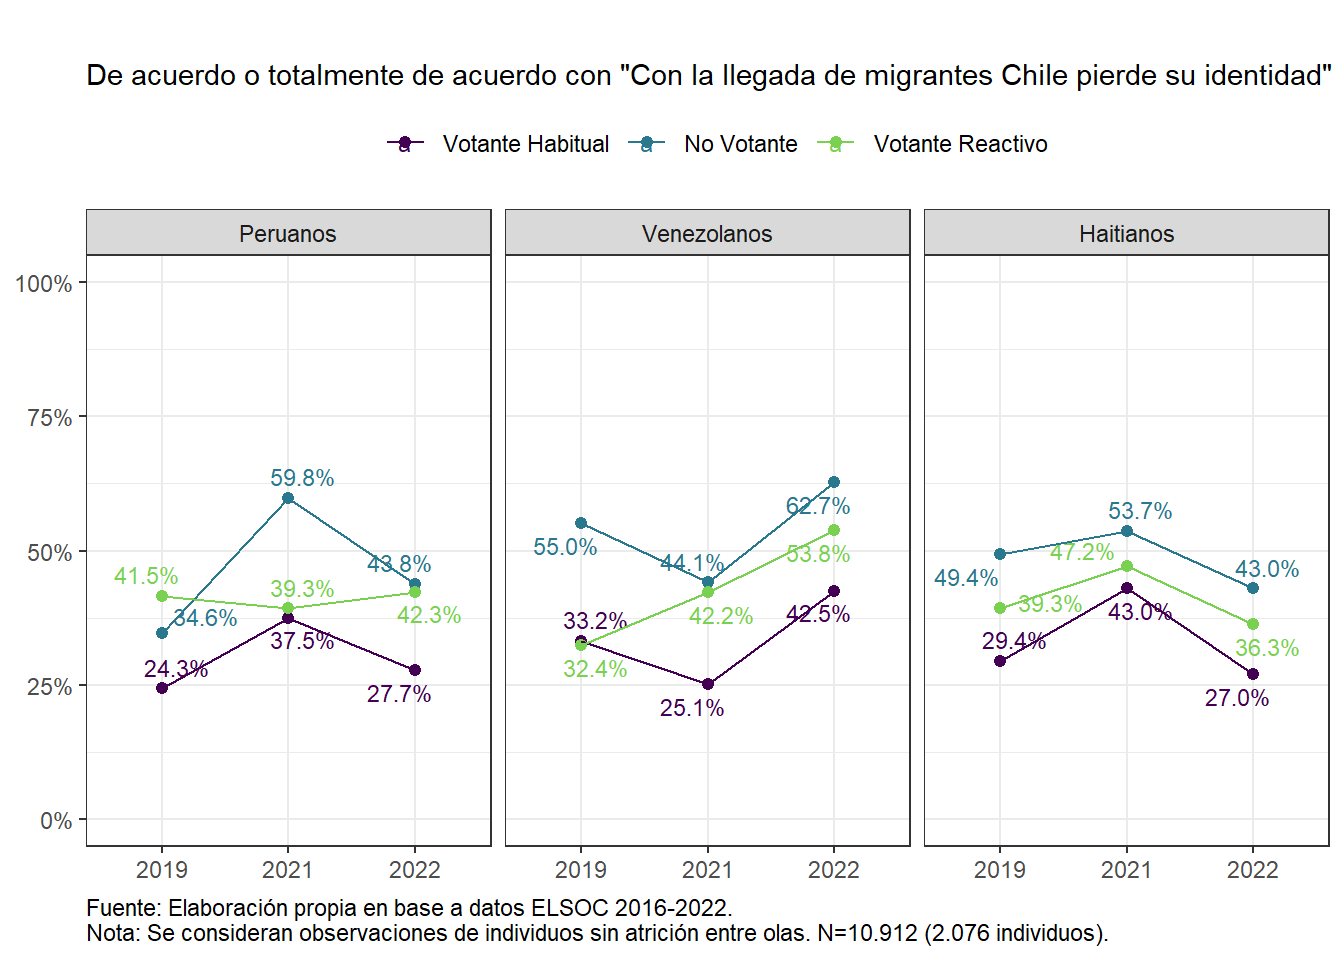 Inmigración y amenaza hacia la identidad chilena, según nacionalidad de migrantes y perfil de votante